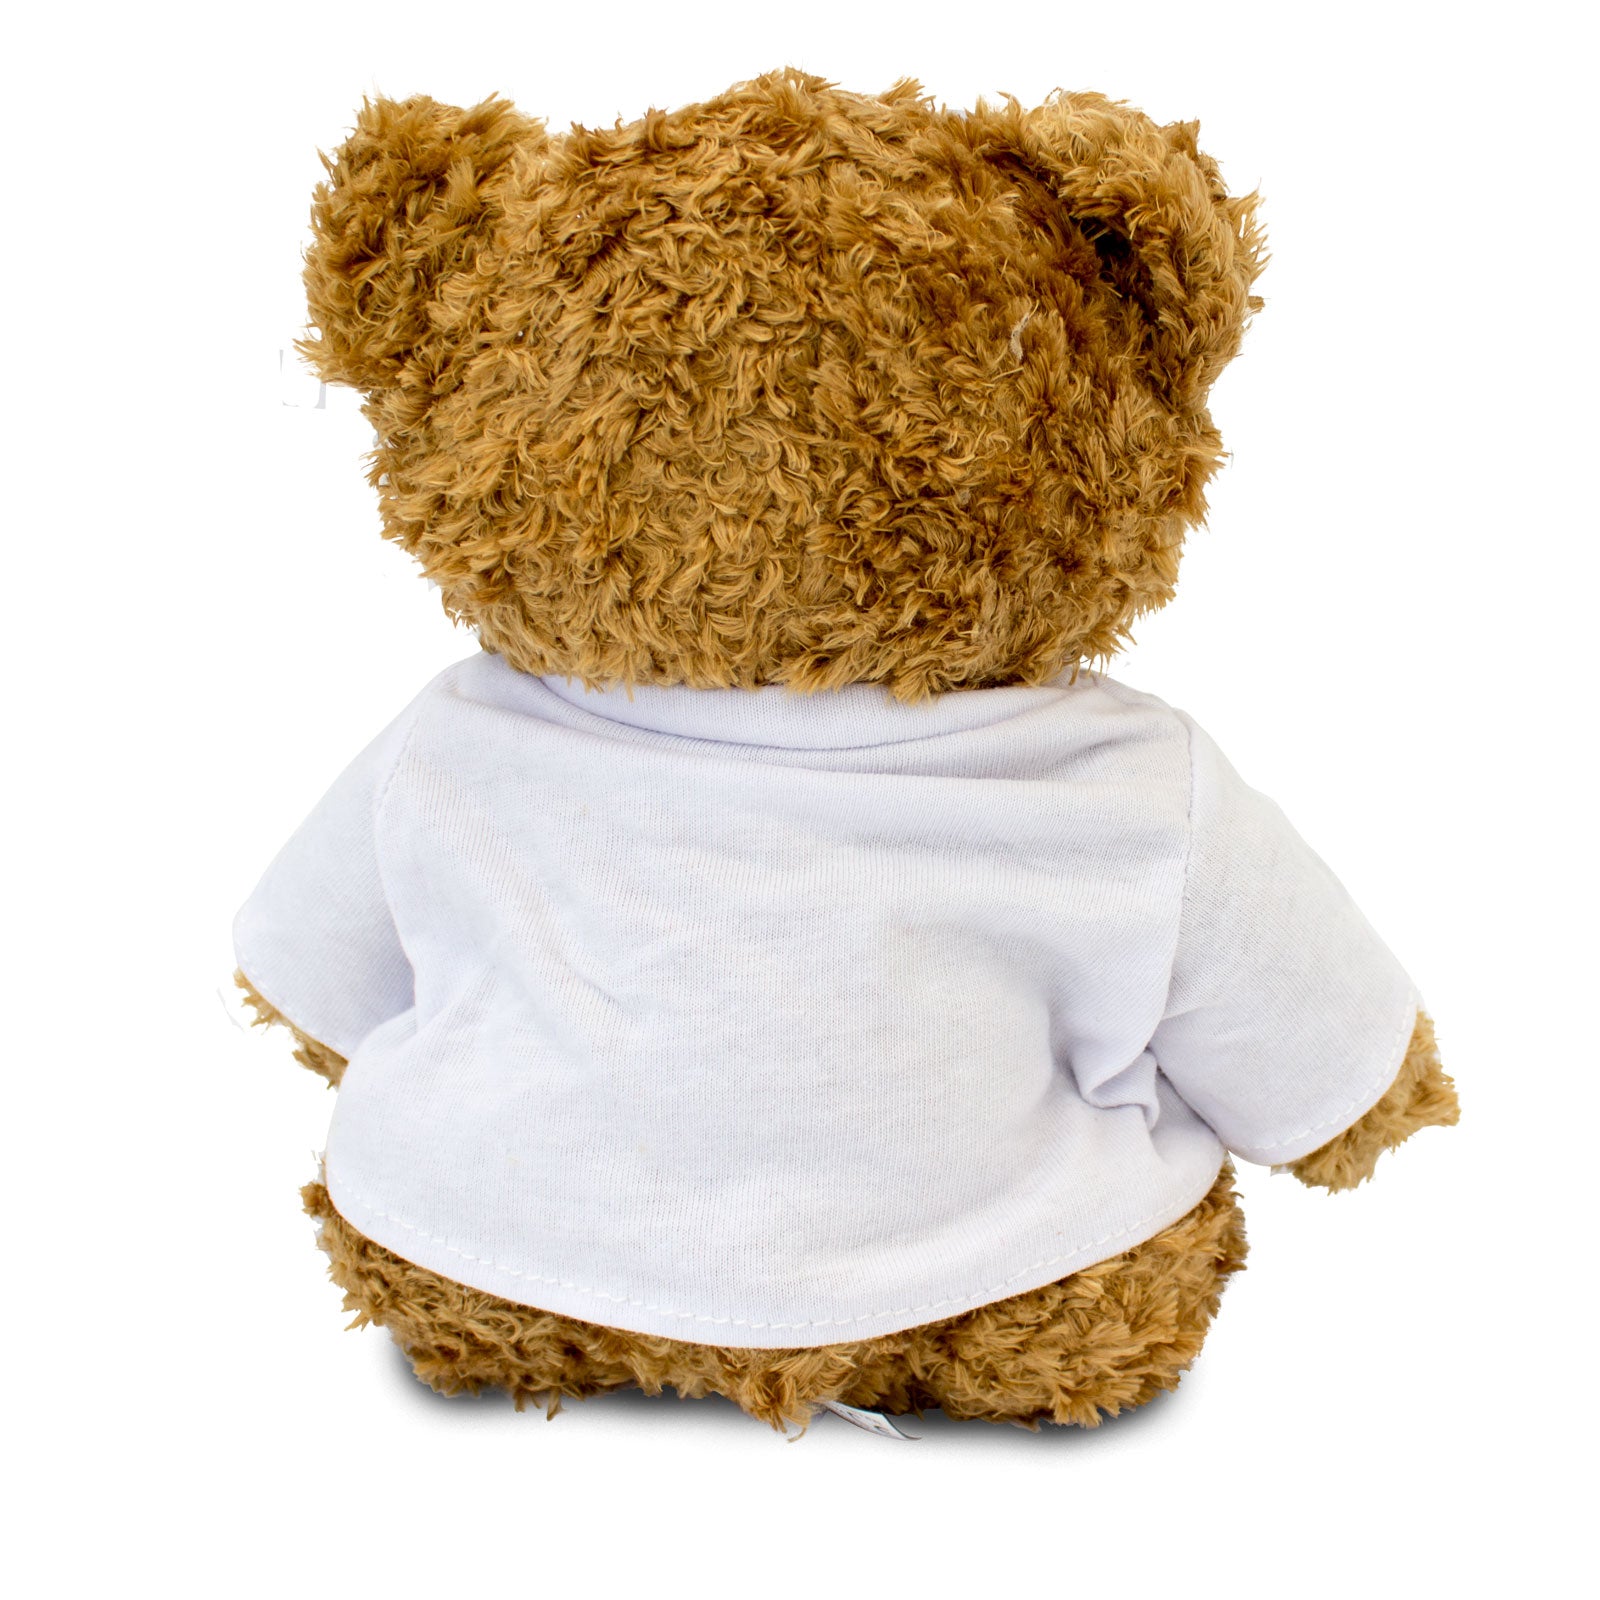 I Love James - Teddy Bear